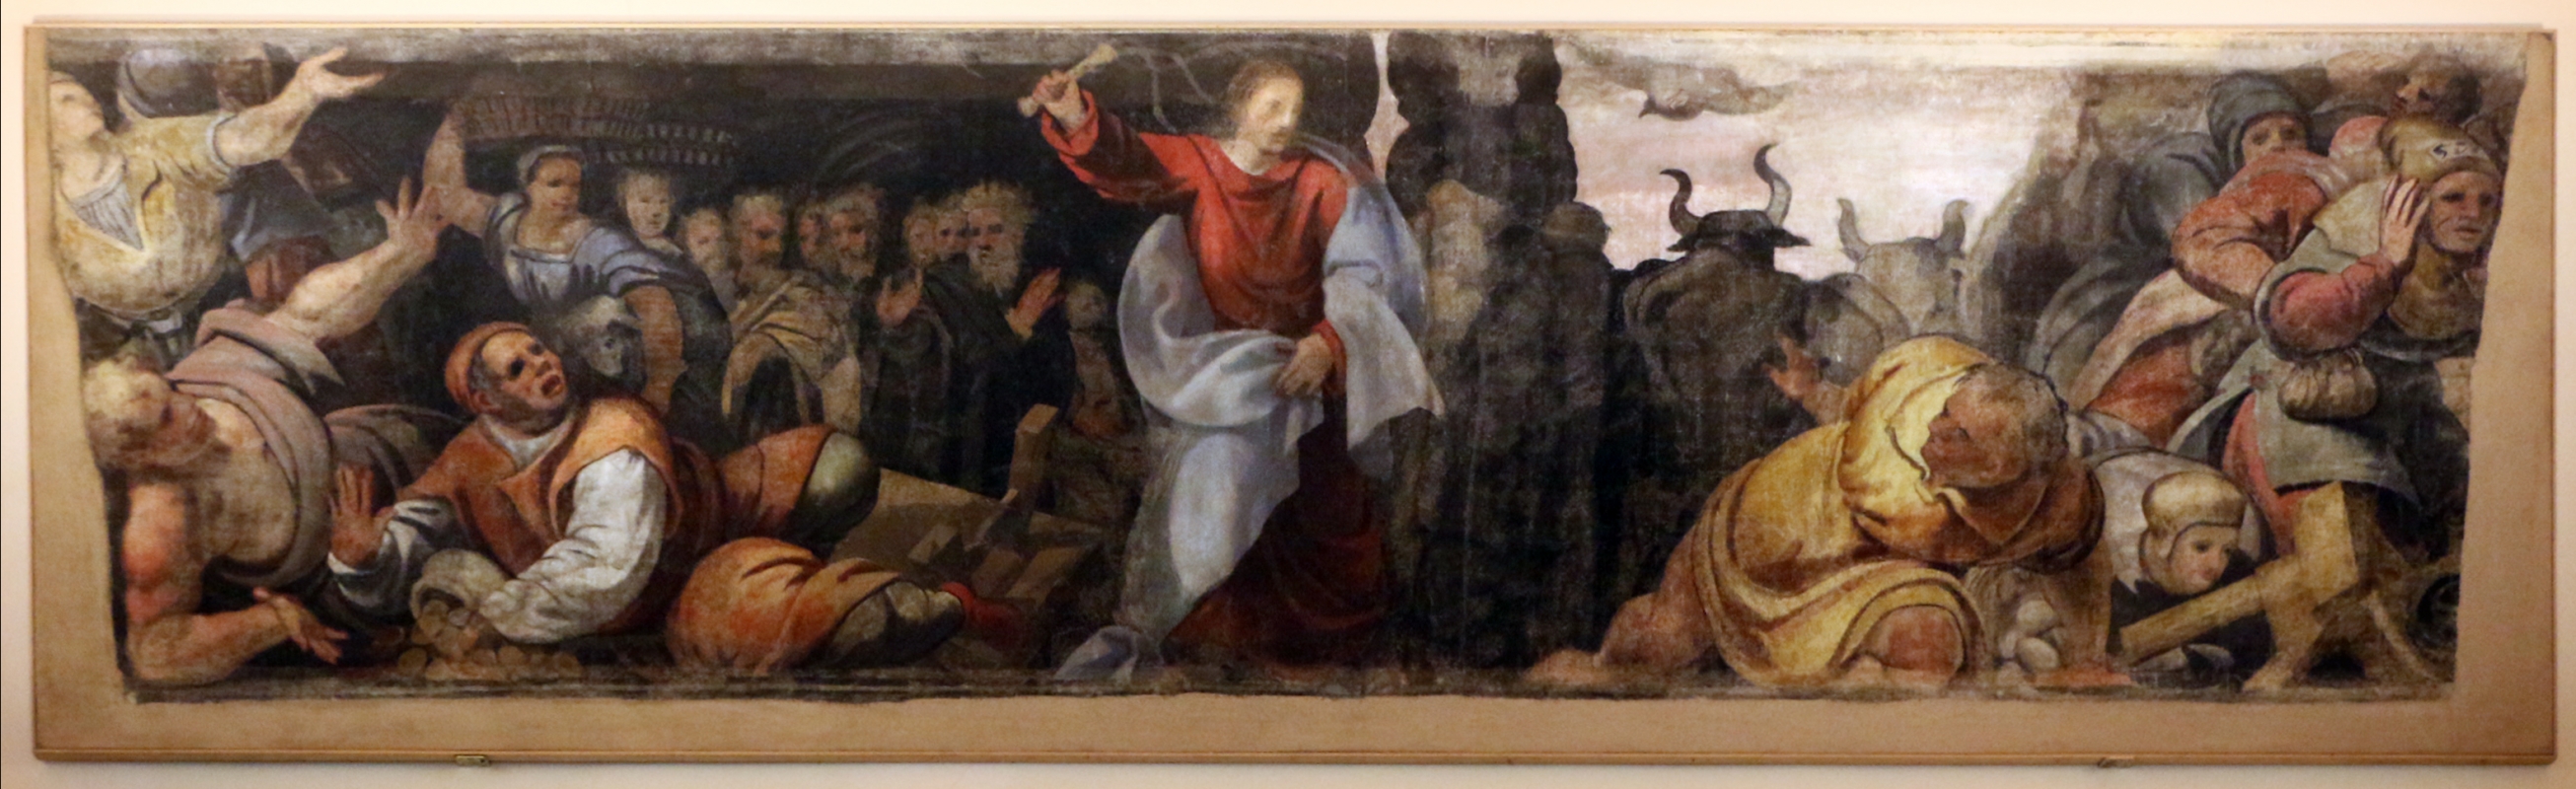 Giuseppe mazzuoli detto il bastardo, cacciata dei mercanti dal tempio, 1579-80, dalla chiesa del gesù a ferrara 0 - Sailko